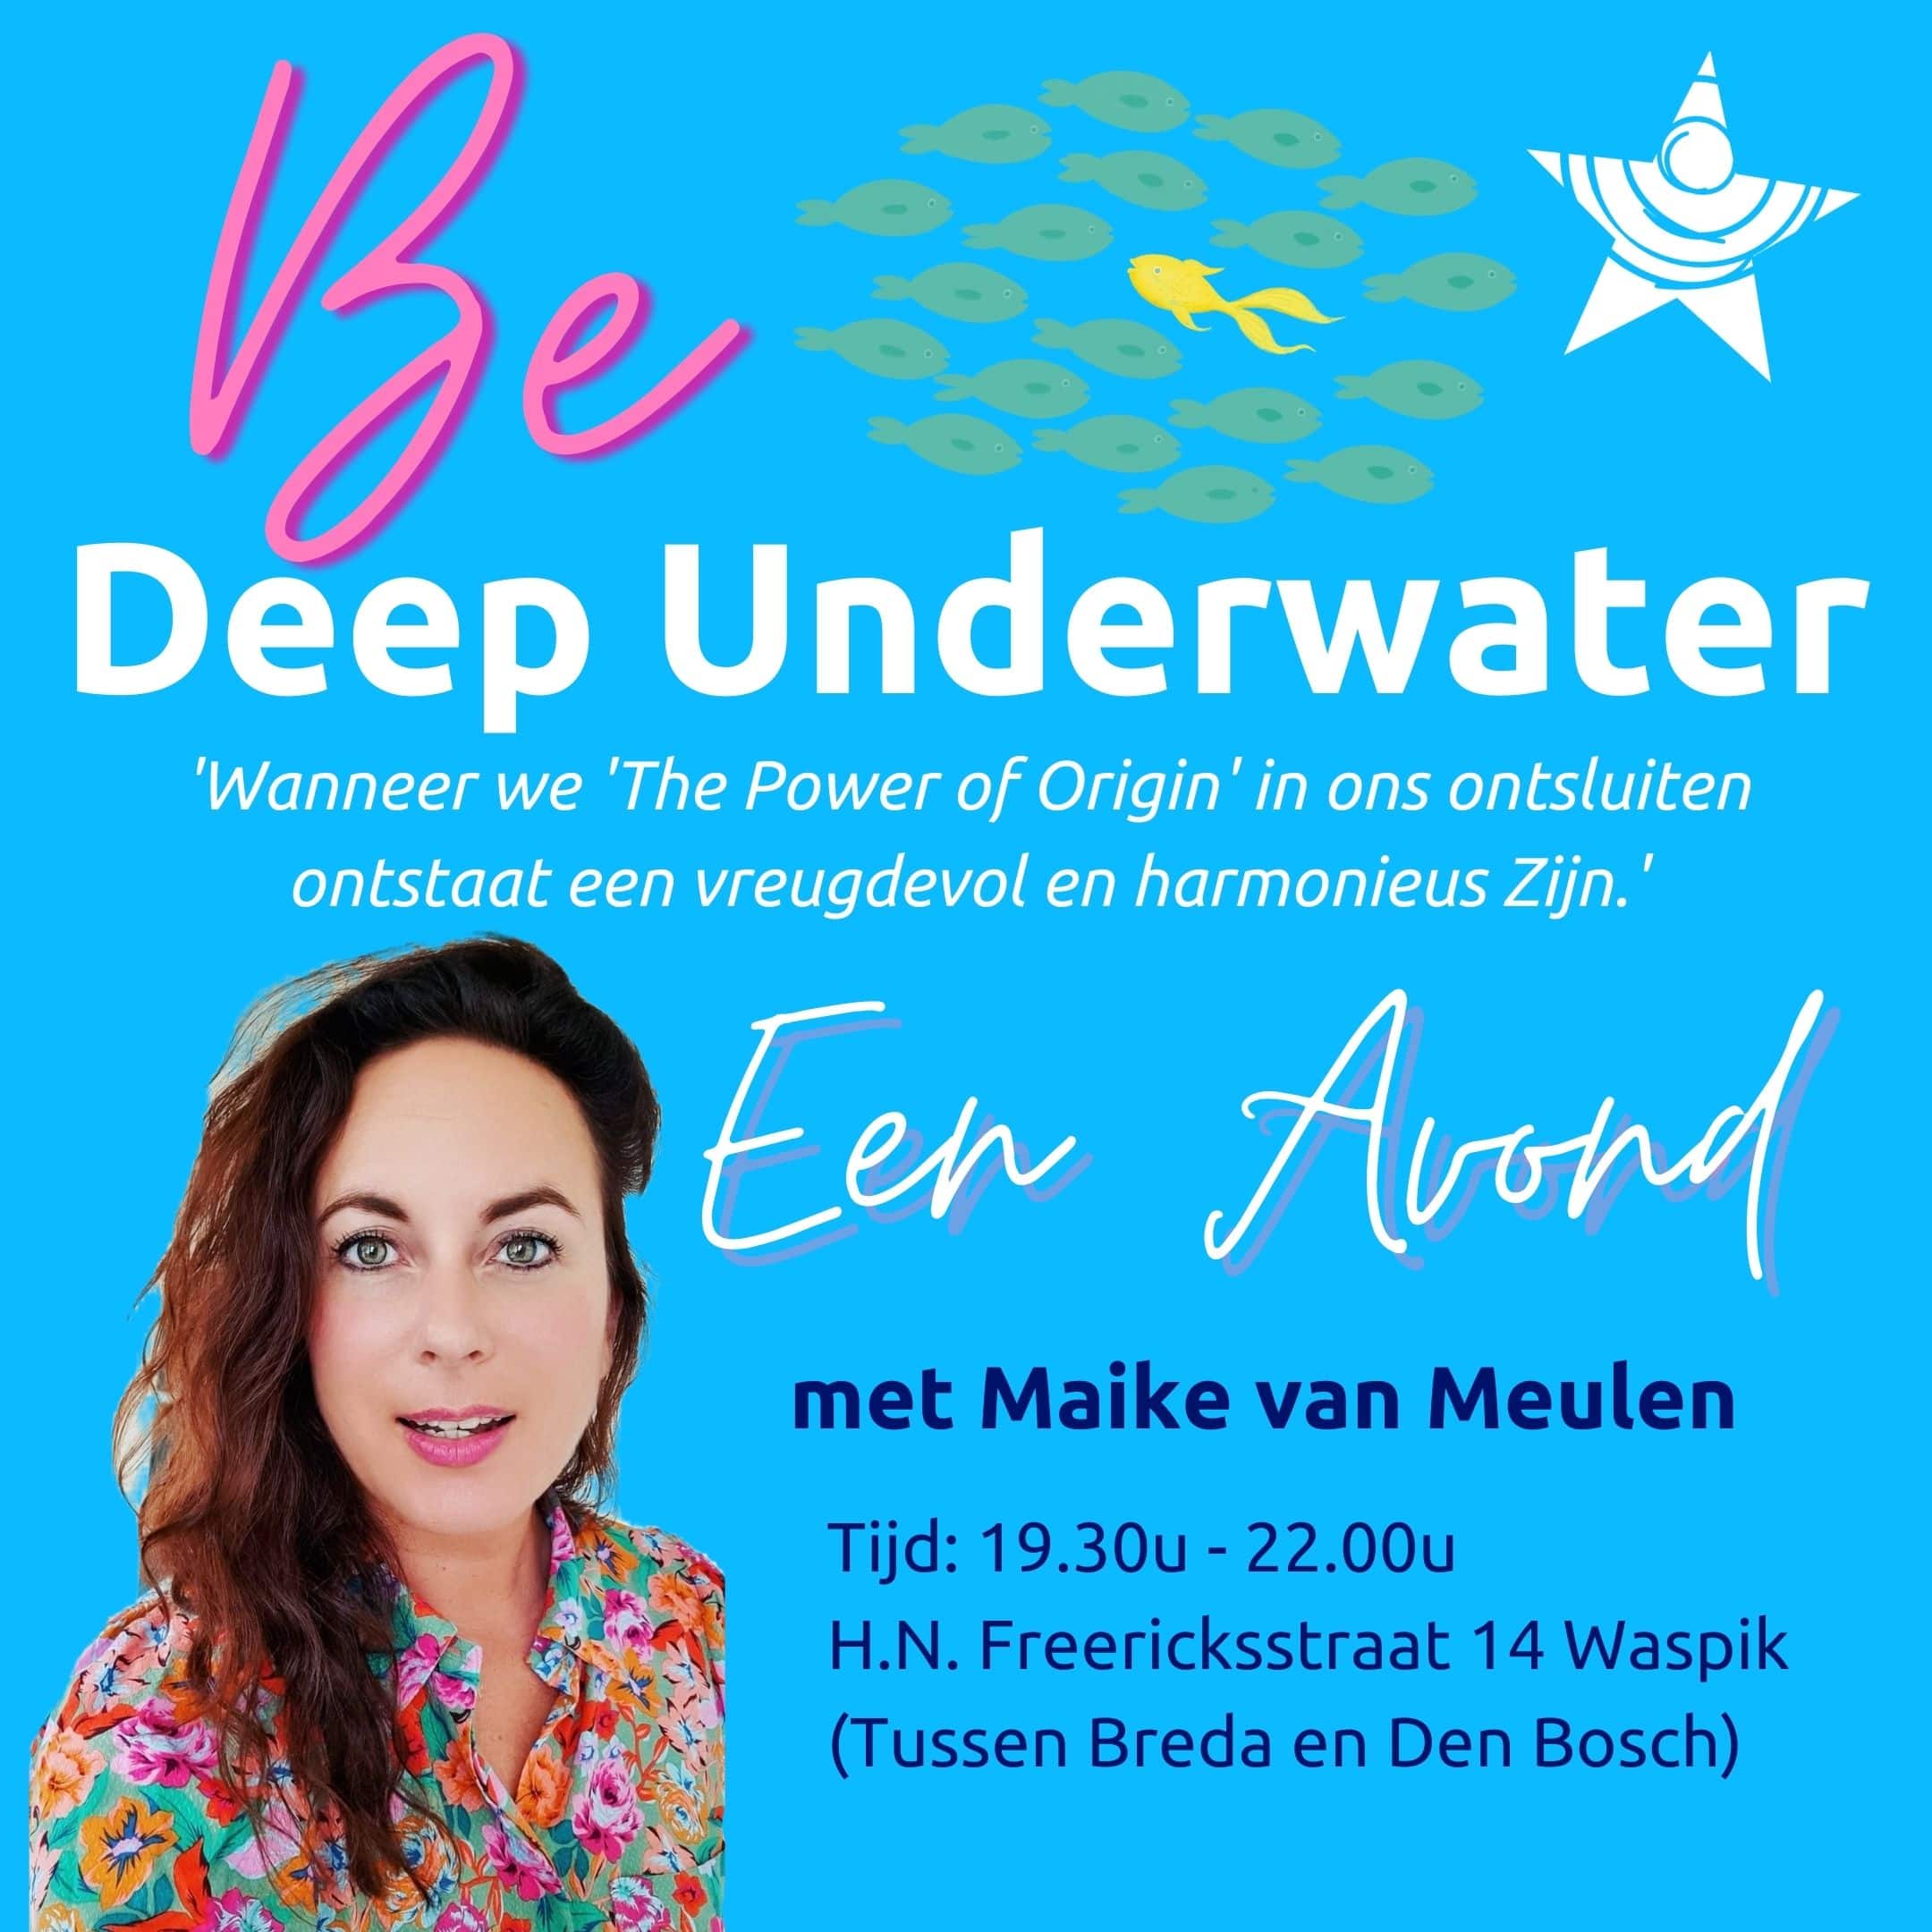 Be Deep Underwater met Maike van Meulen